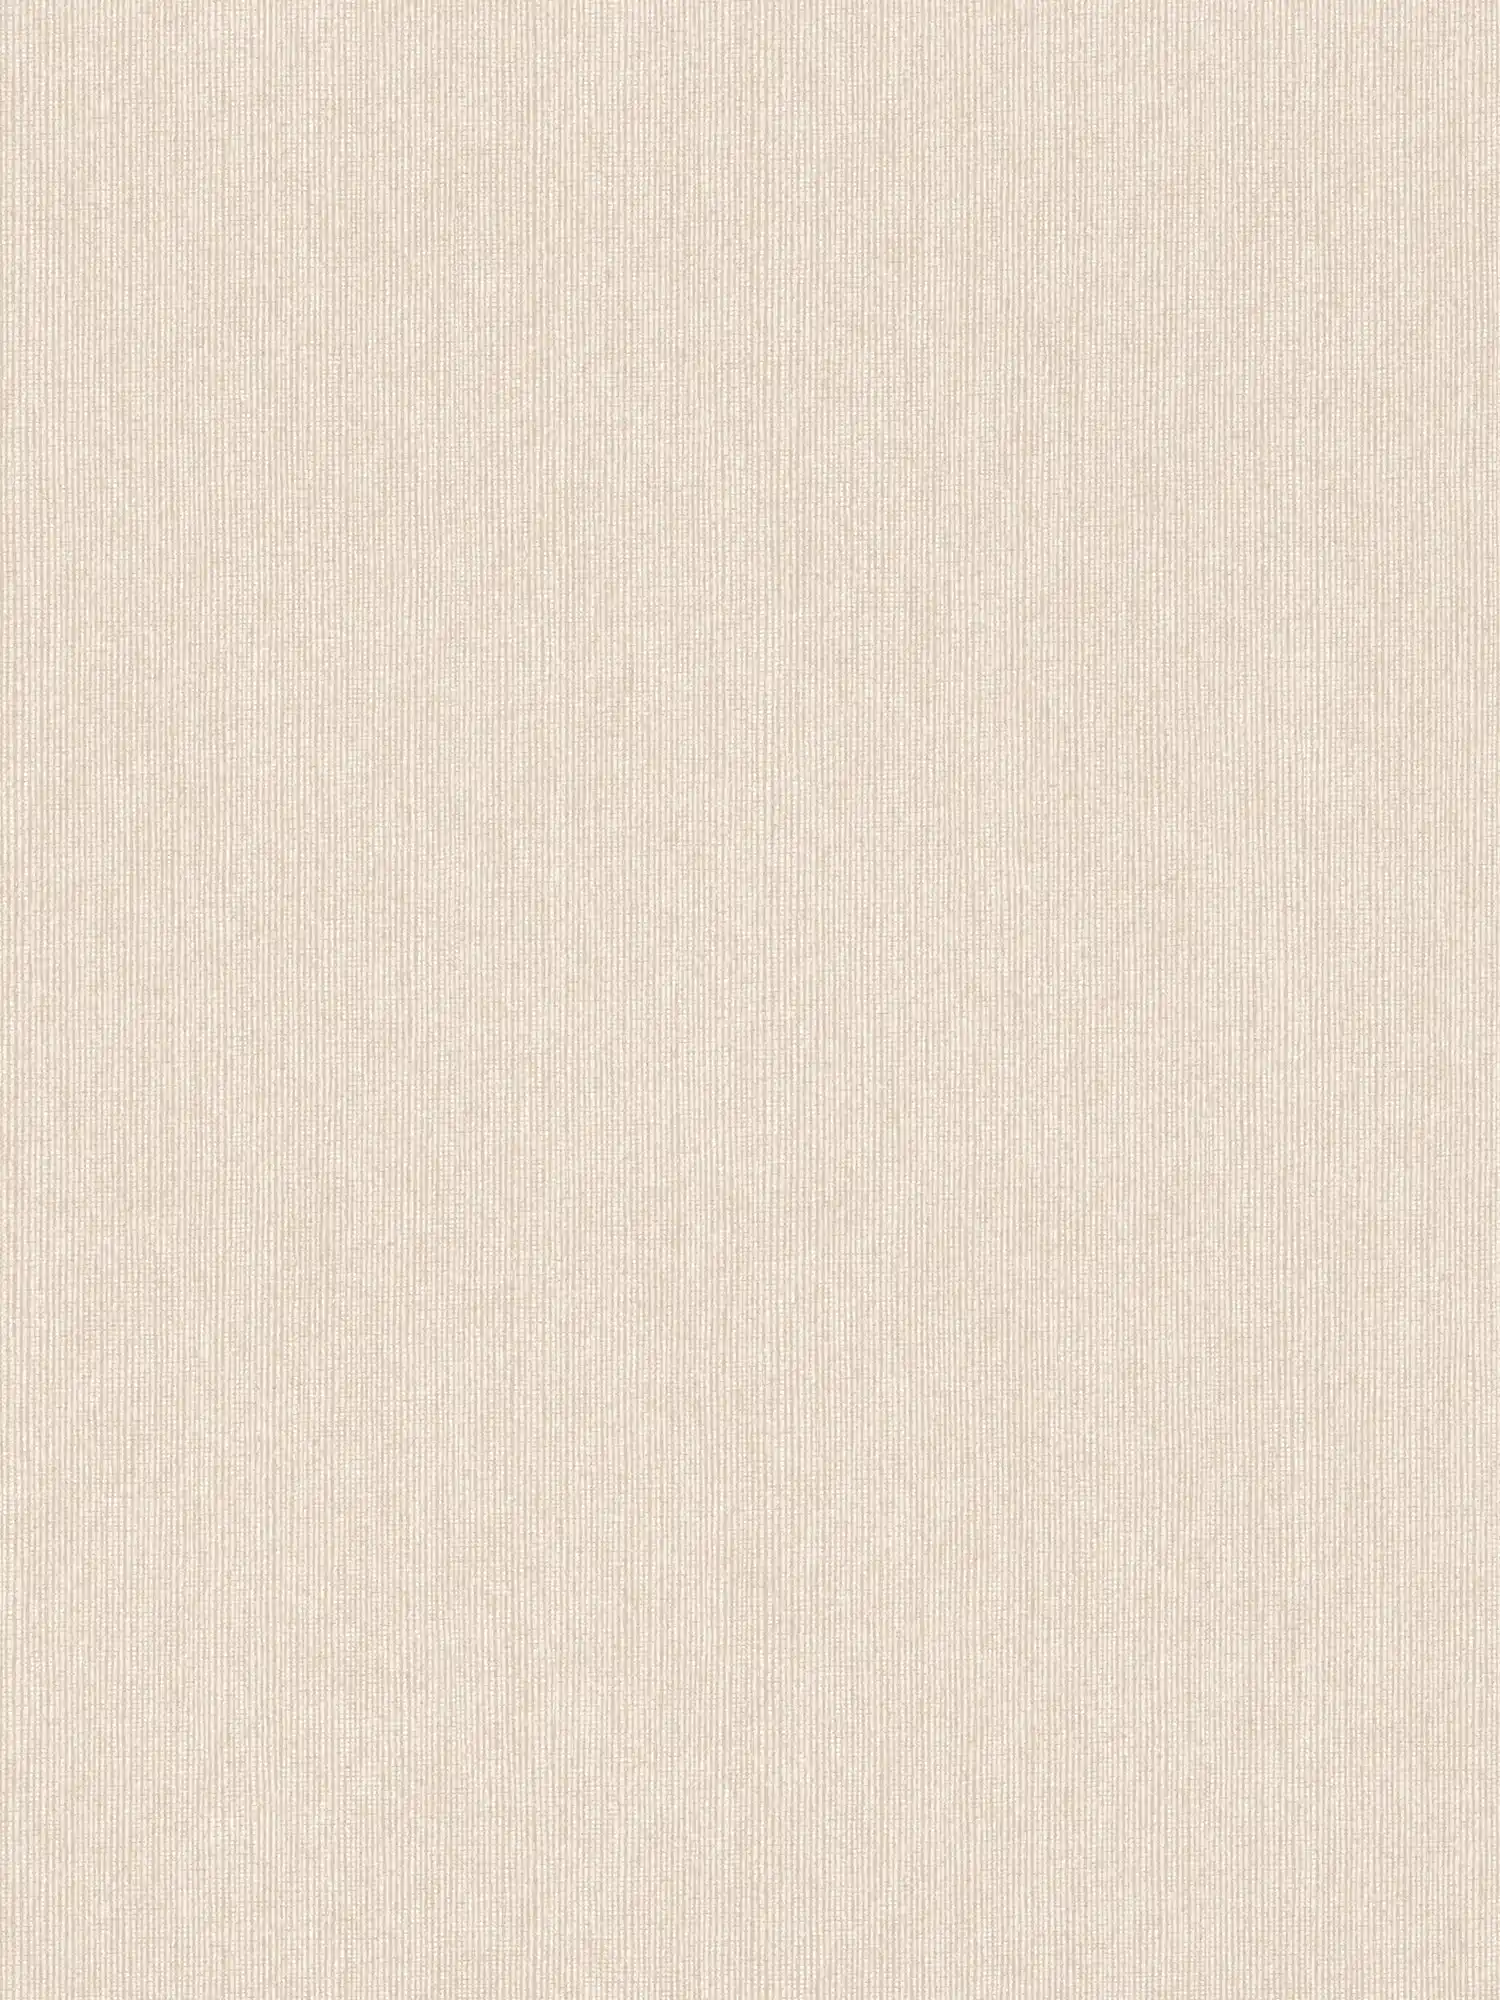 Carta da parati in tessuto non tessuto beige chiaro con effetto lucido e aspetto tessile - beige
